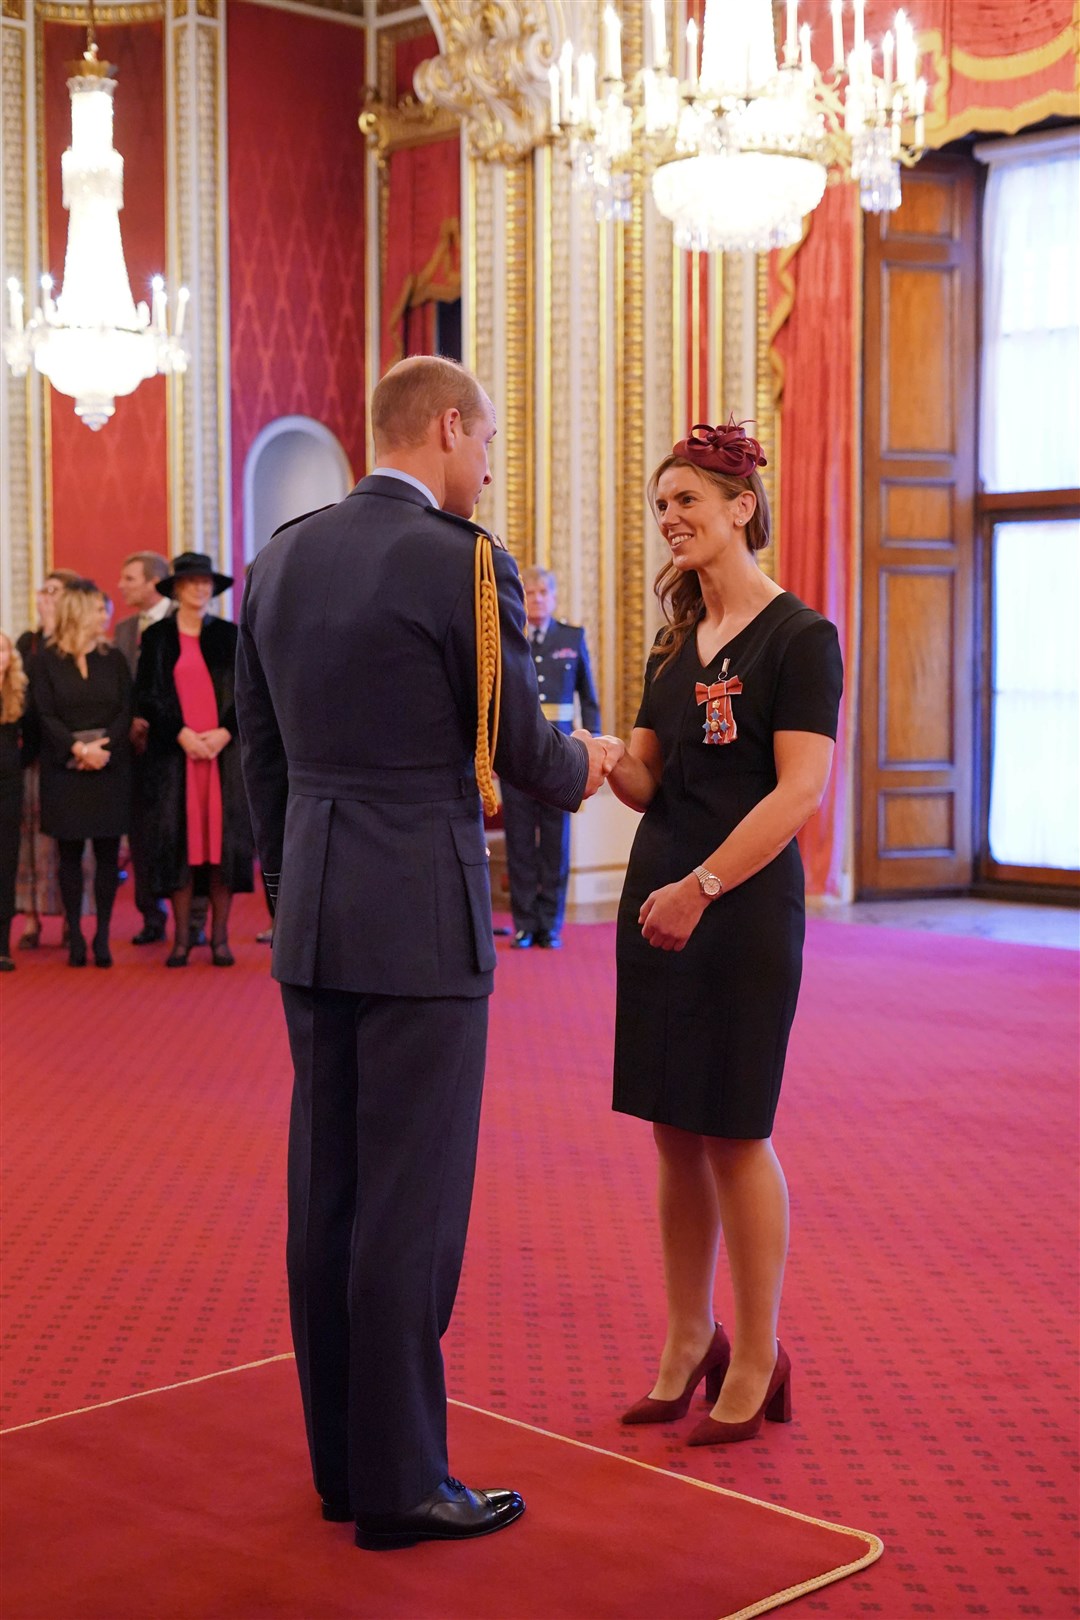 Sarah Hunter chats to William at Buckingham Palace (Jonathan Brady/PA)